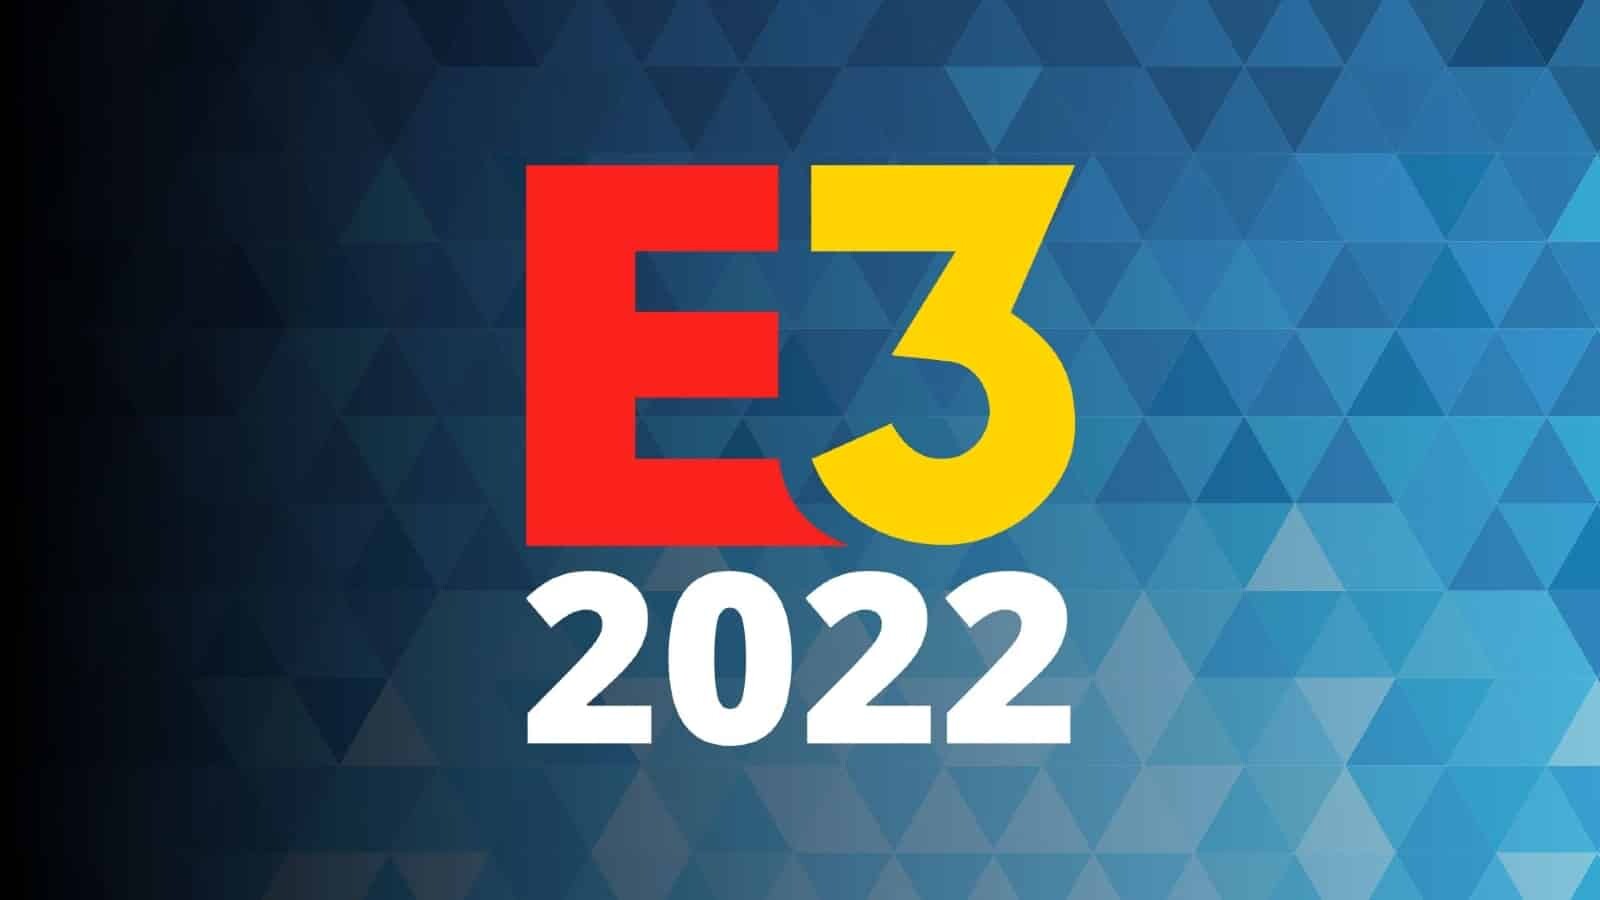 لغو کامل و رسمی برگزاری رویداد E3 2022